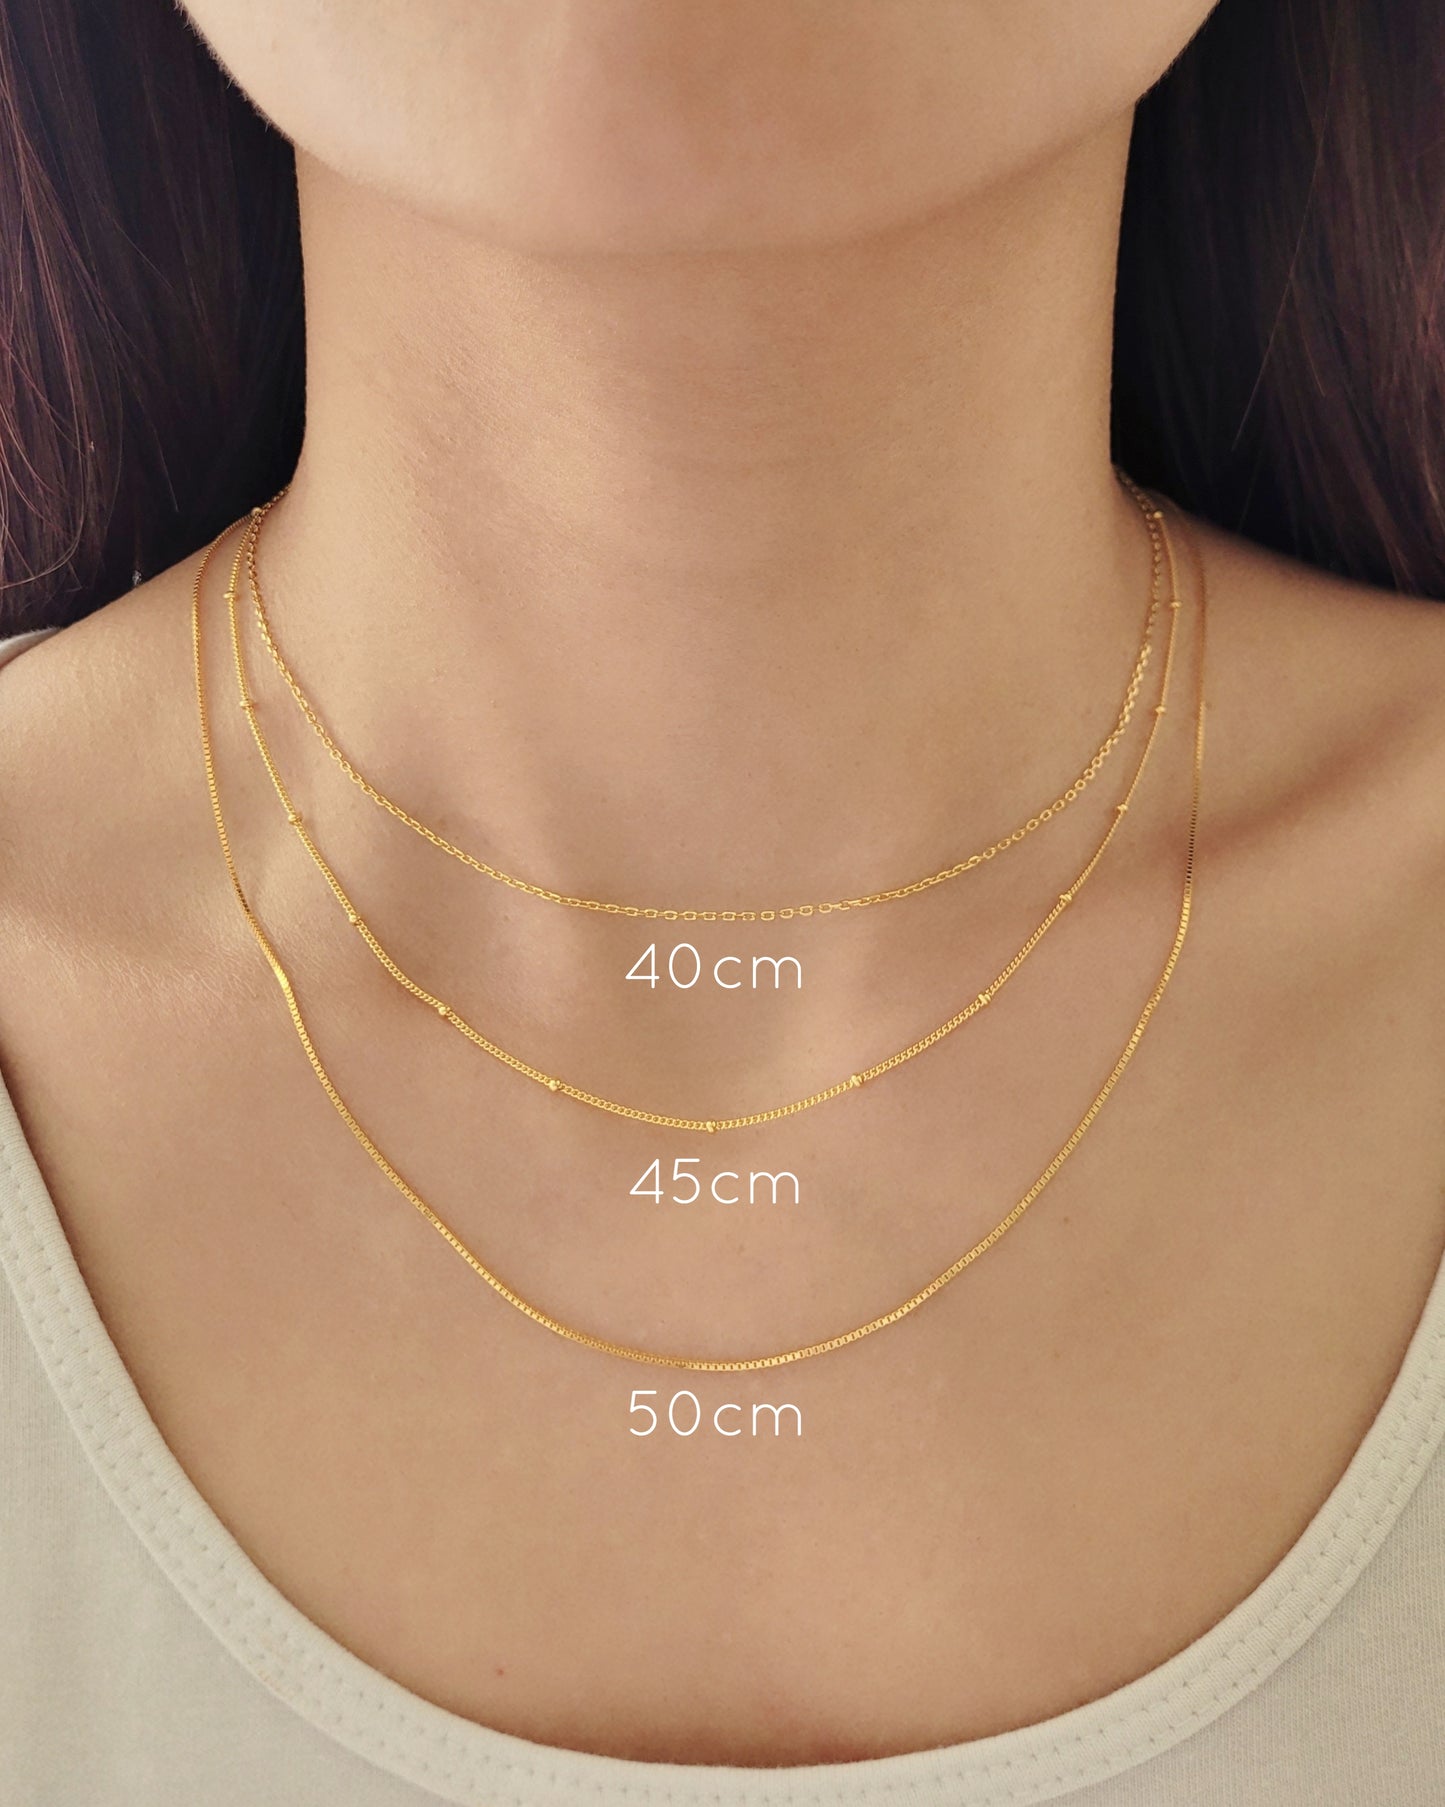 Necklace length measurement